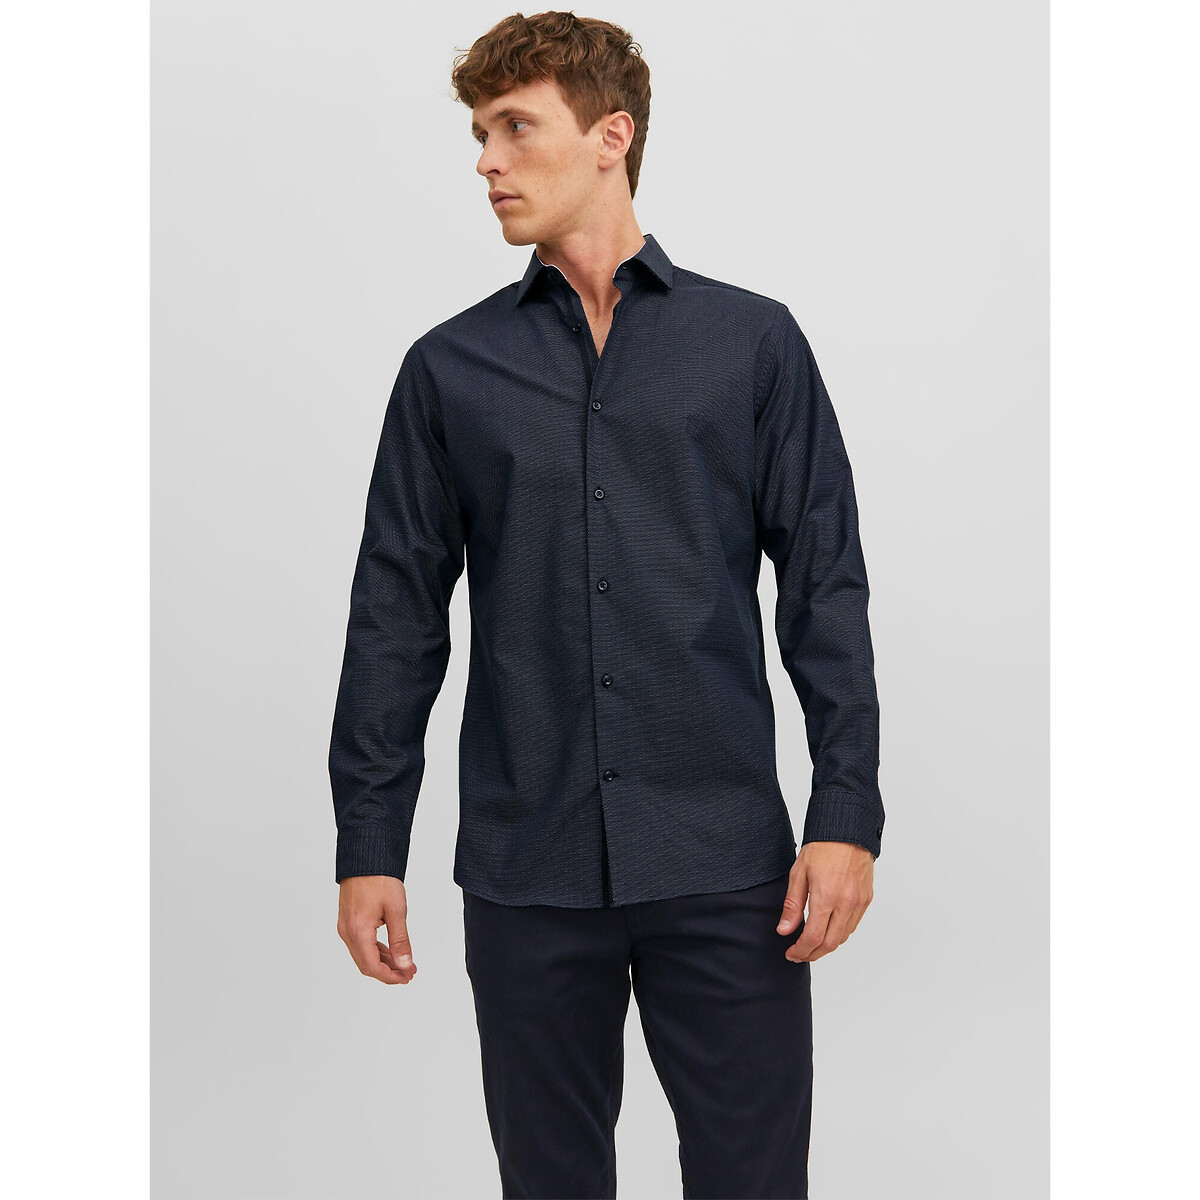 Рубашка Слим из ткани стрейч XL синий LaRedoute, размер XL